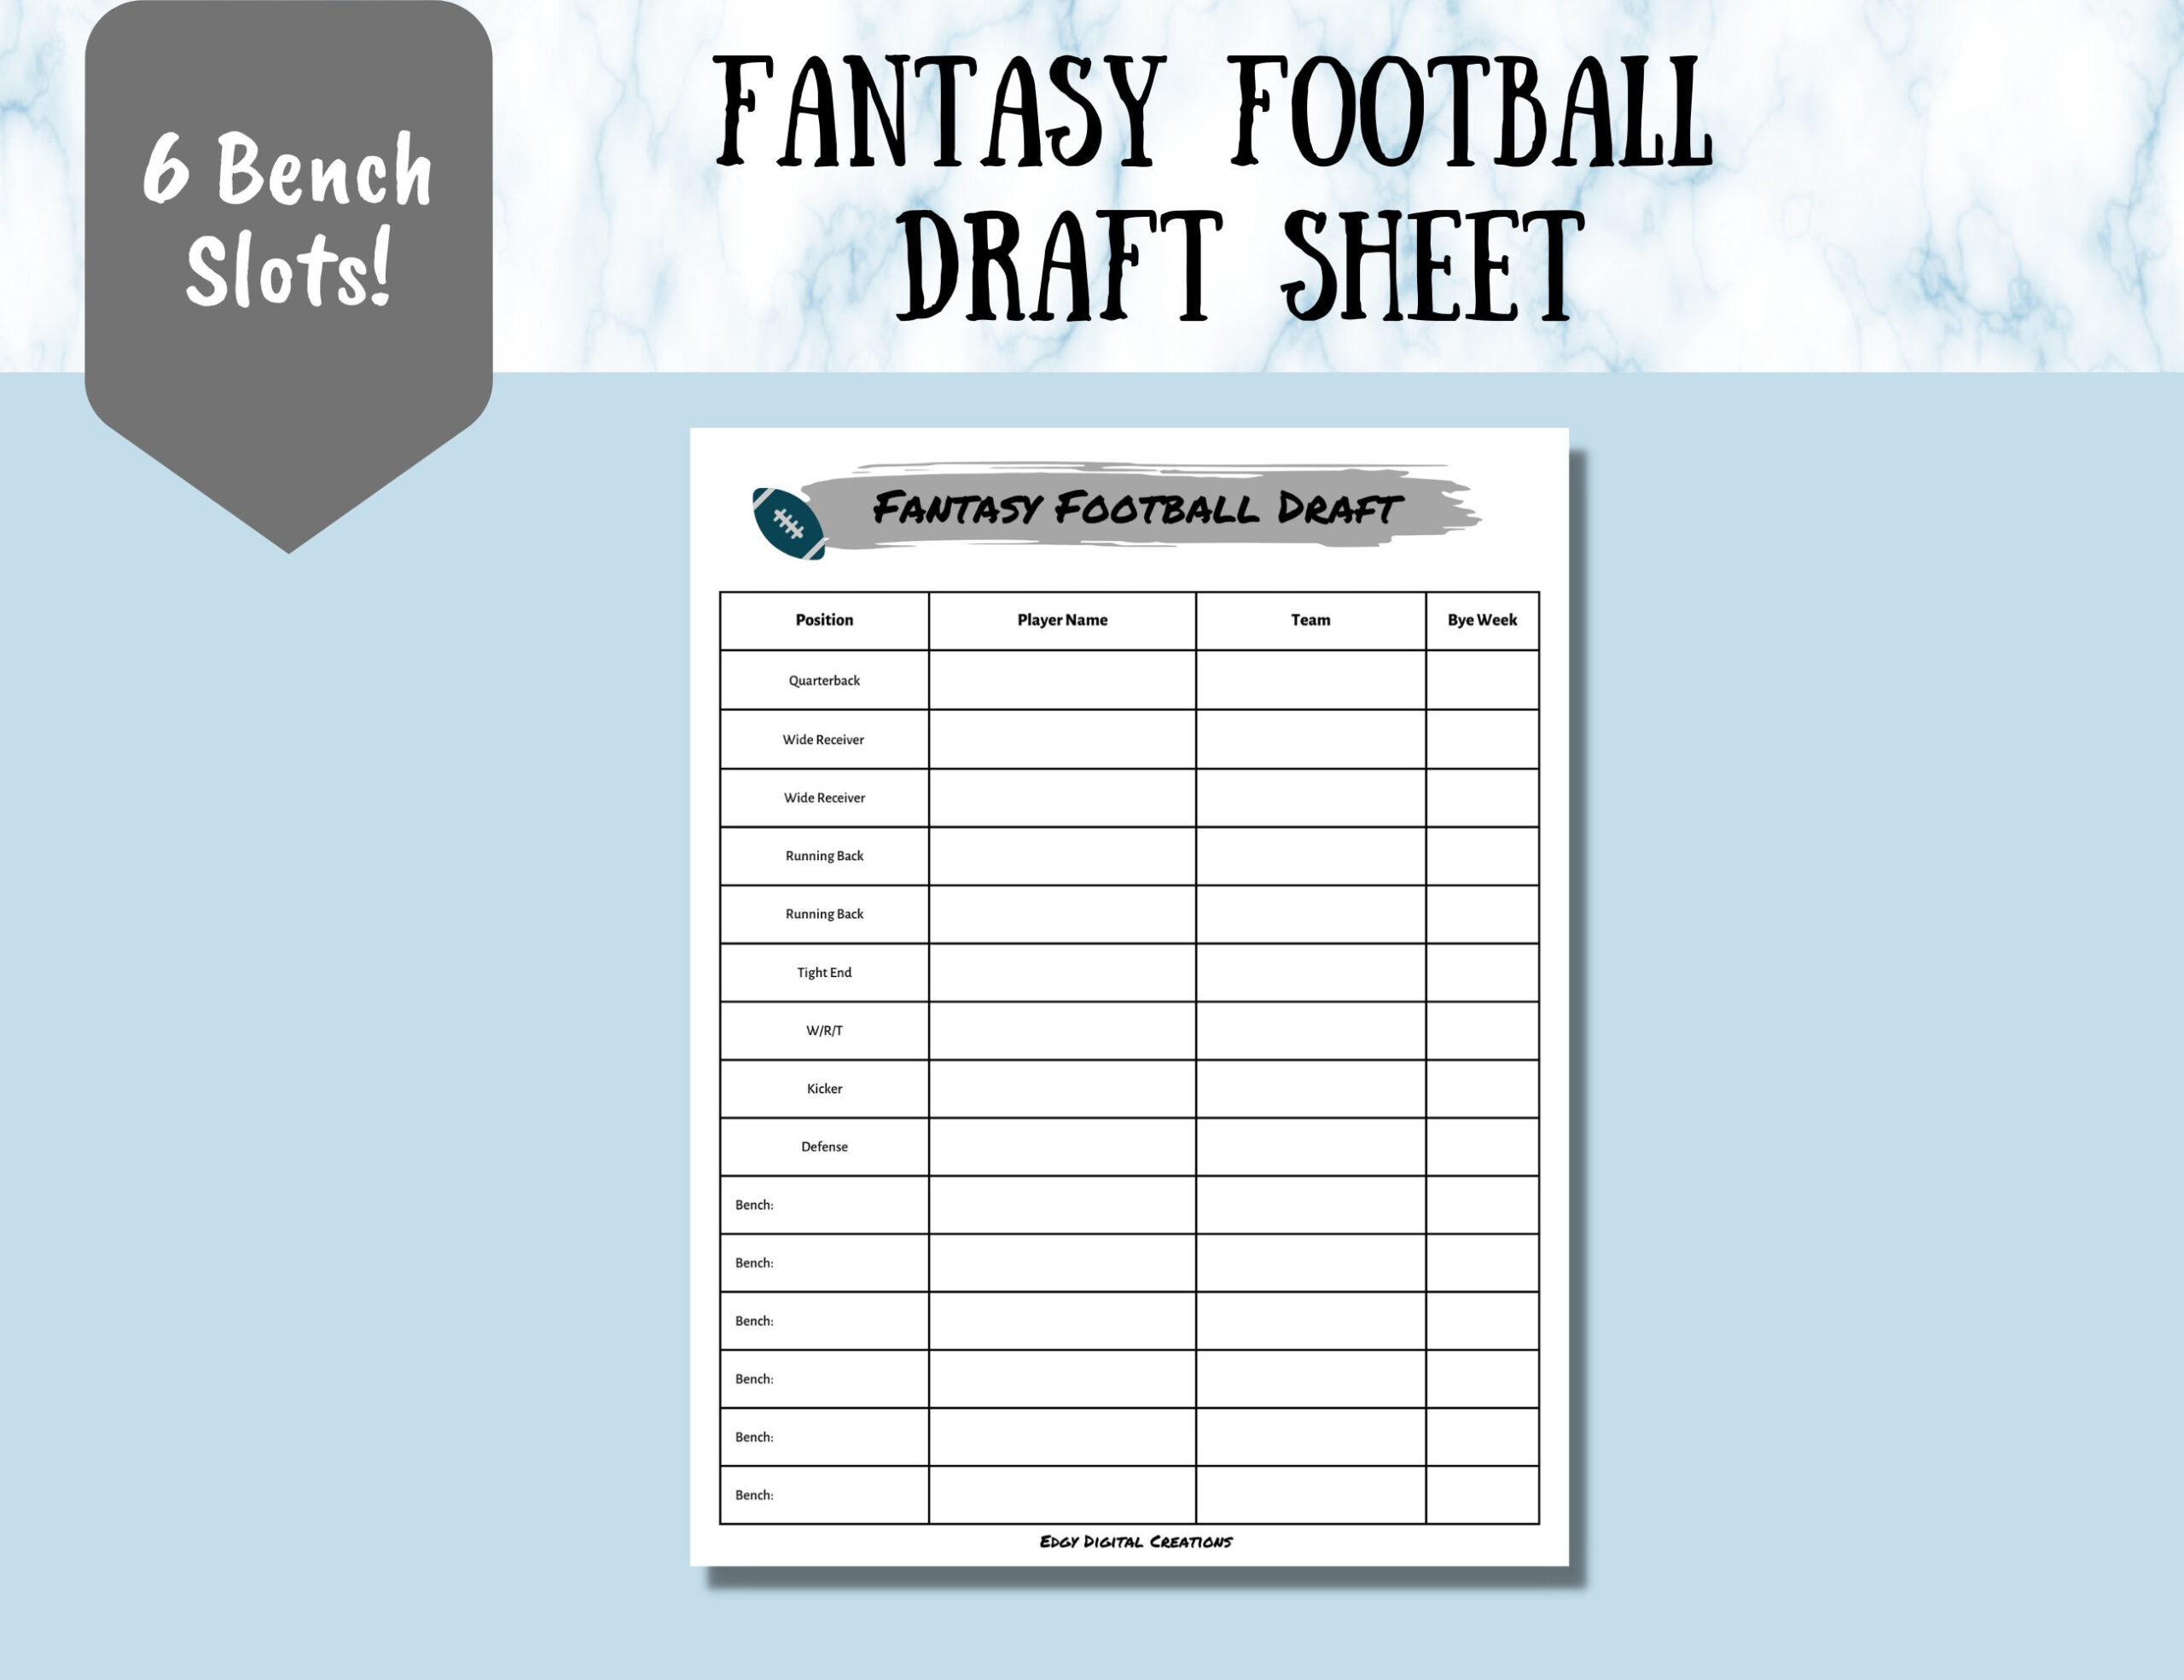 Fantasy Football Draft Sheet, Digital And Printable Draft Sheet intended for Fantasy Football Draft Sheets Printable Free